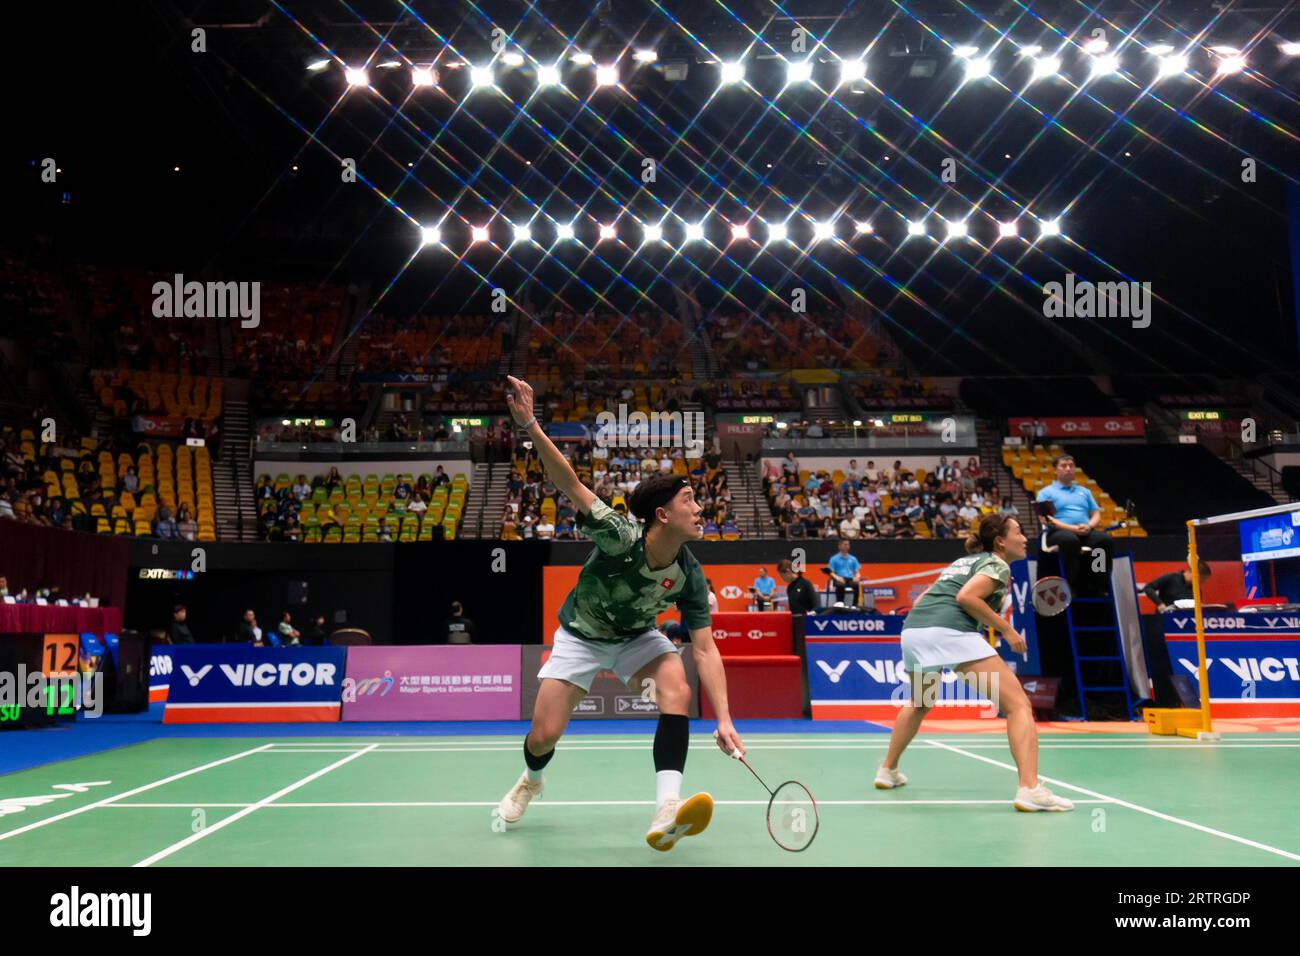 live score badminton indonesia open